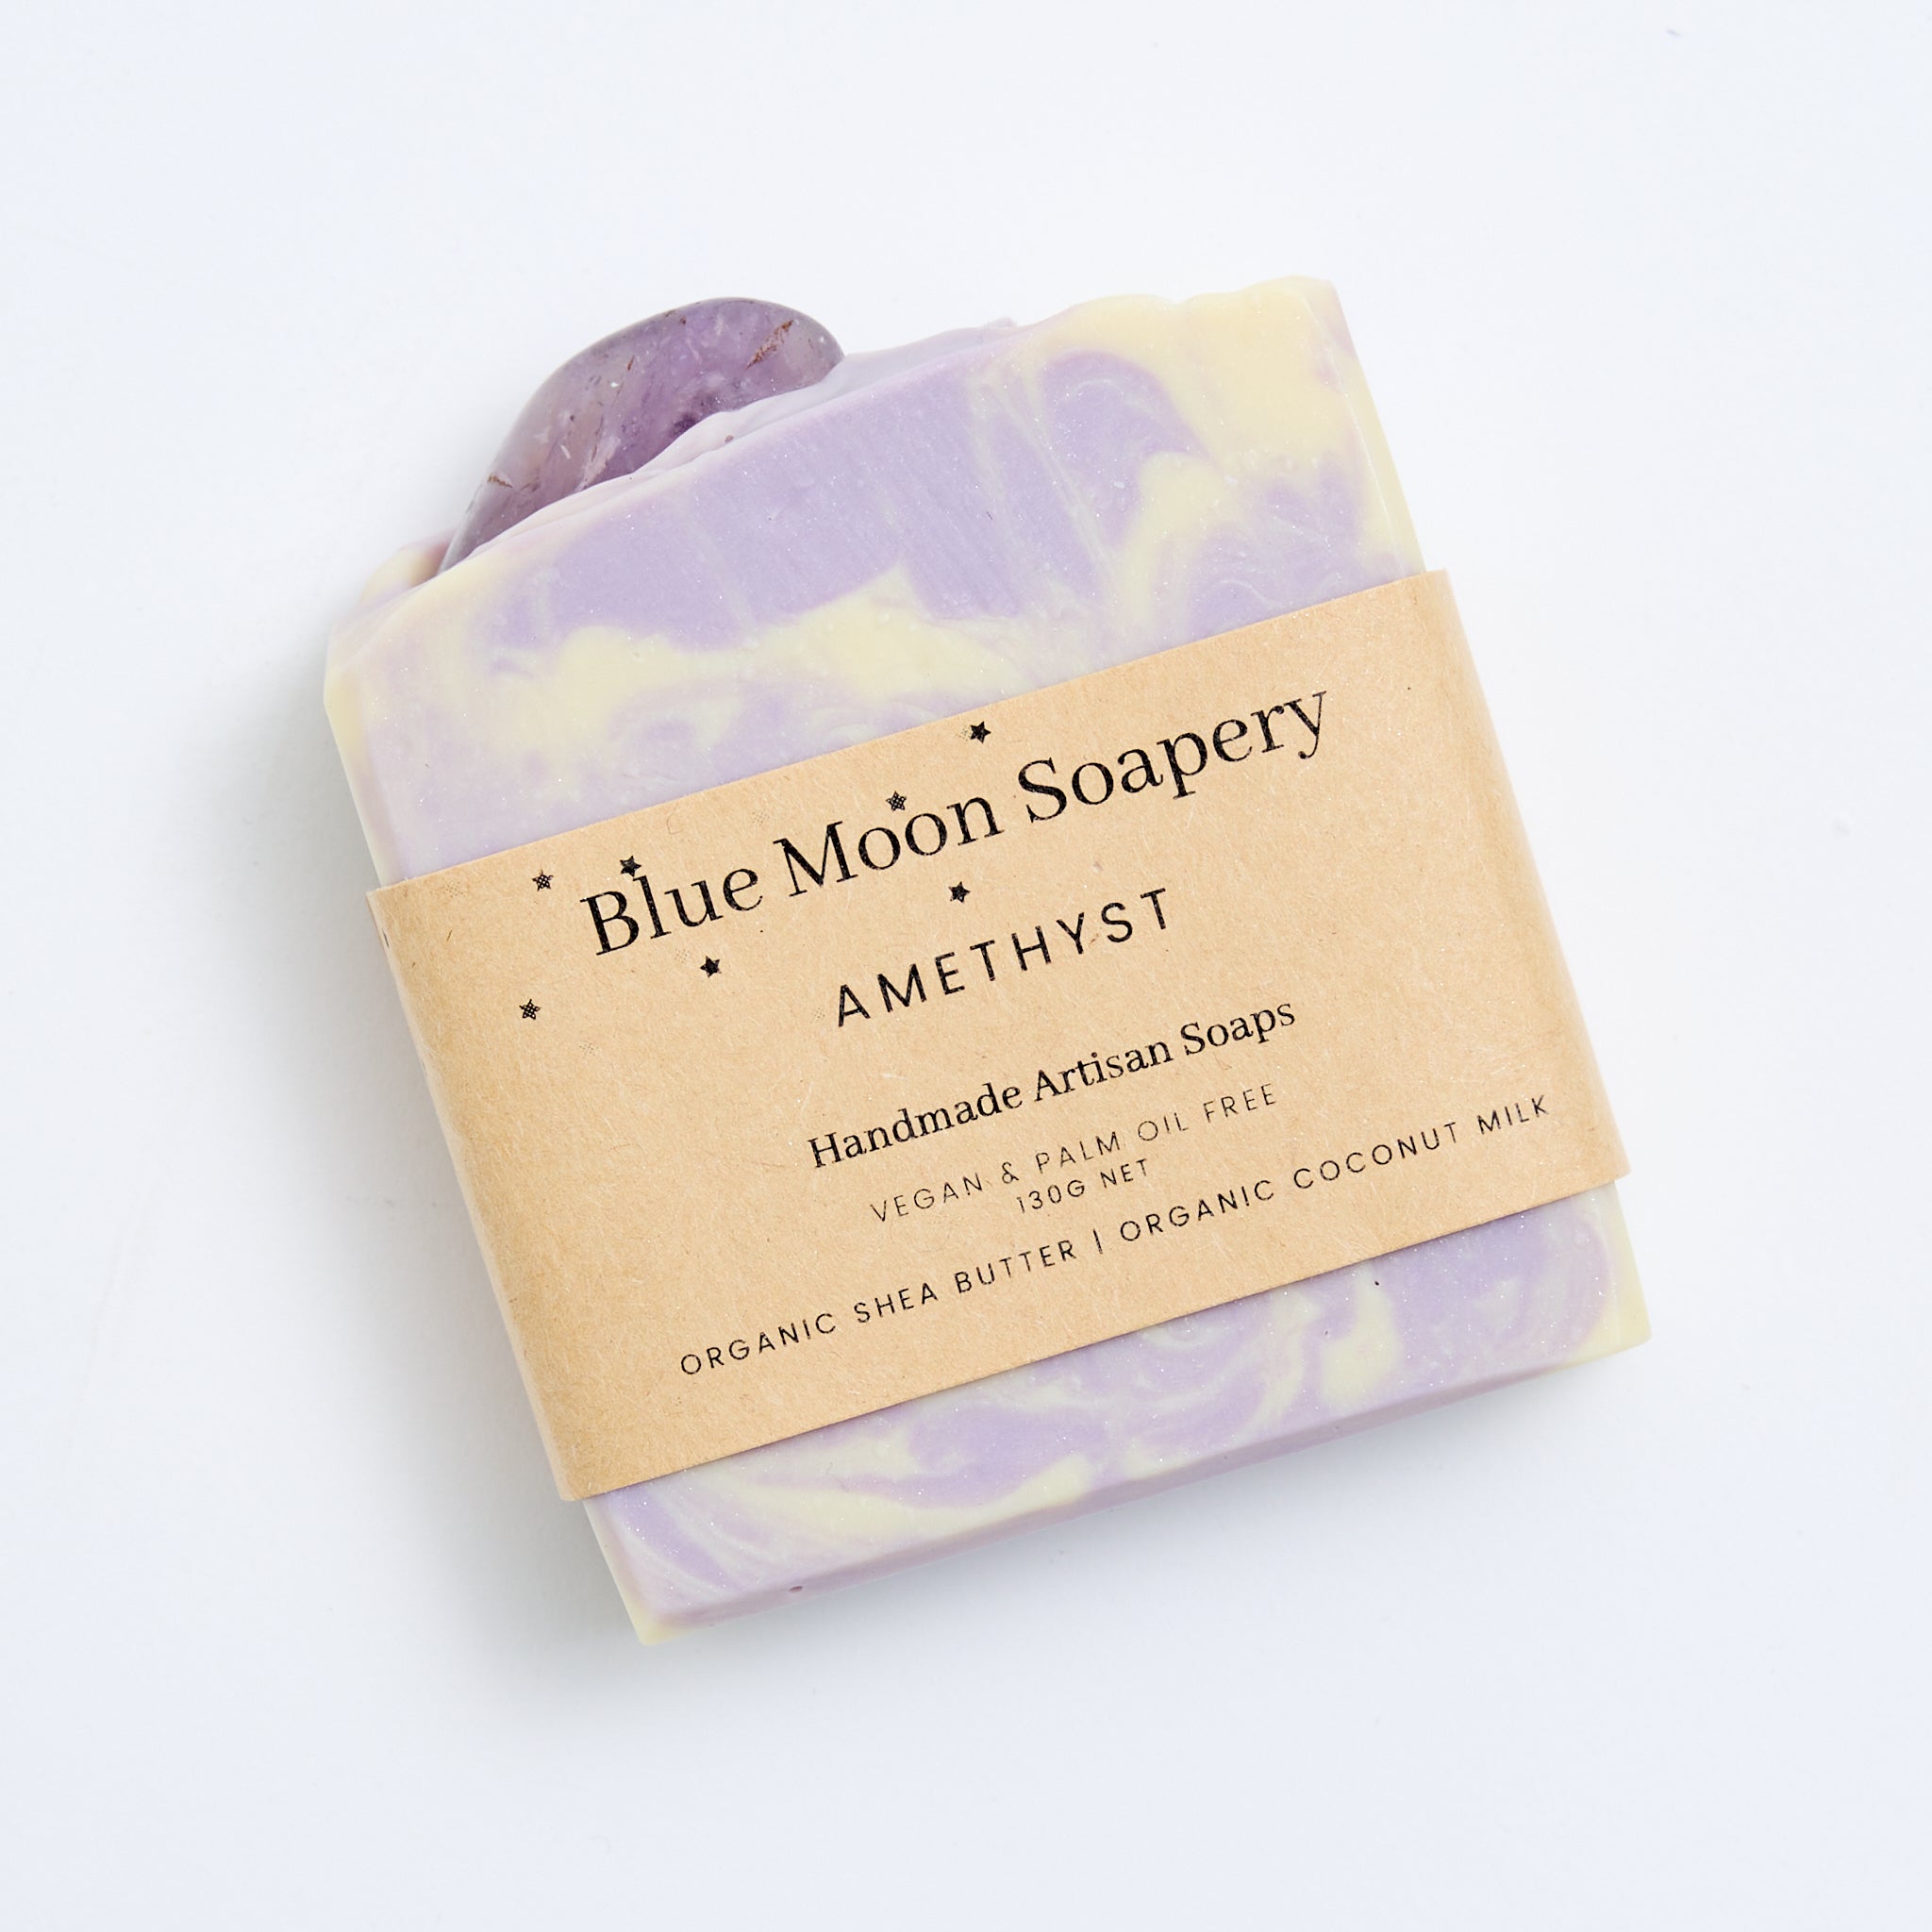 Blue Moon Soapery amethyst gemstone soap